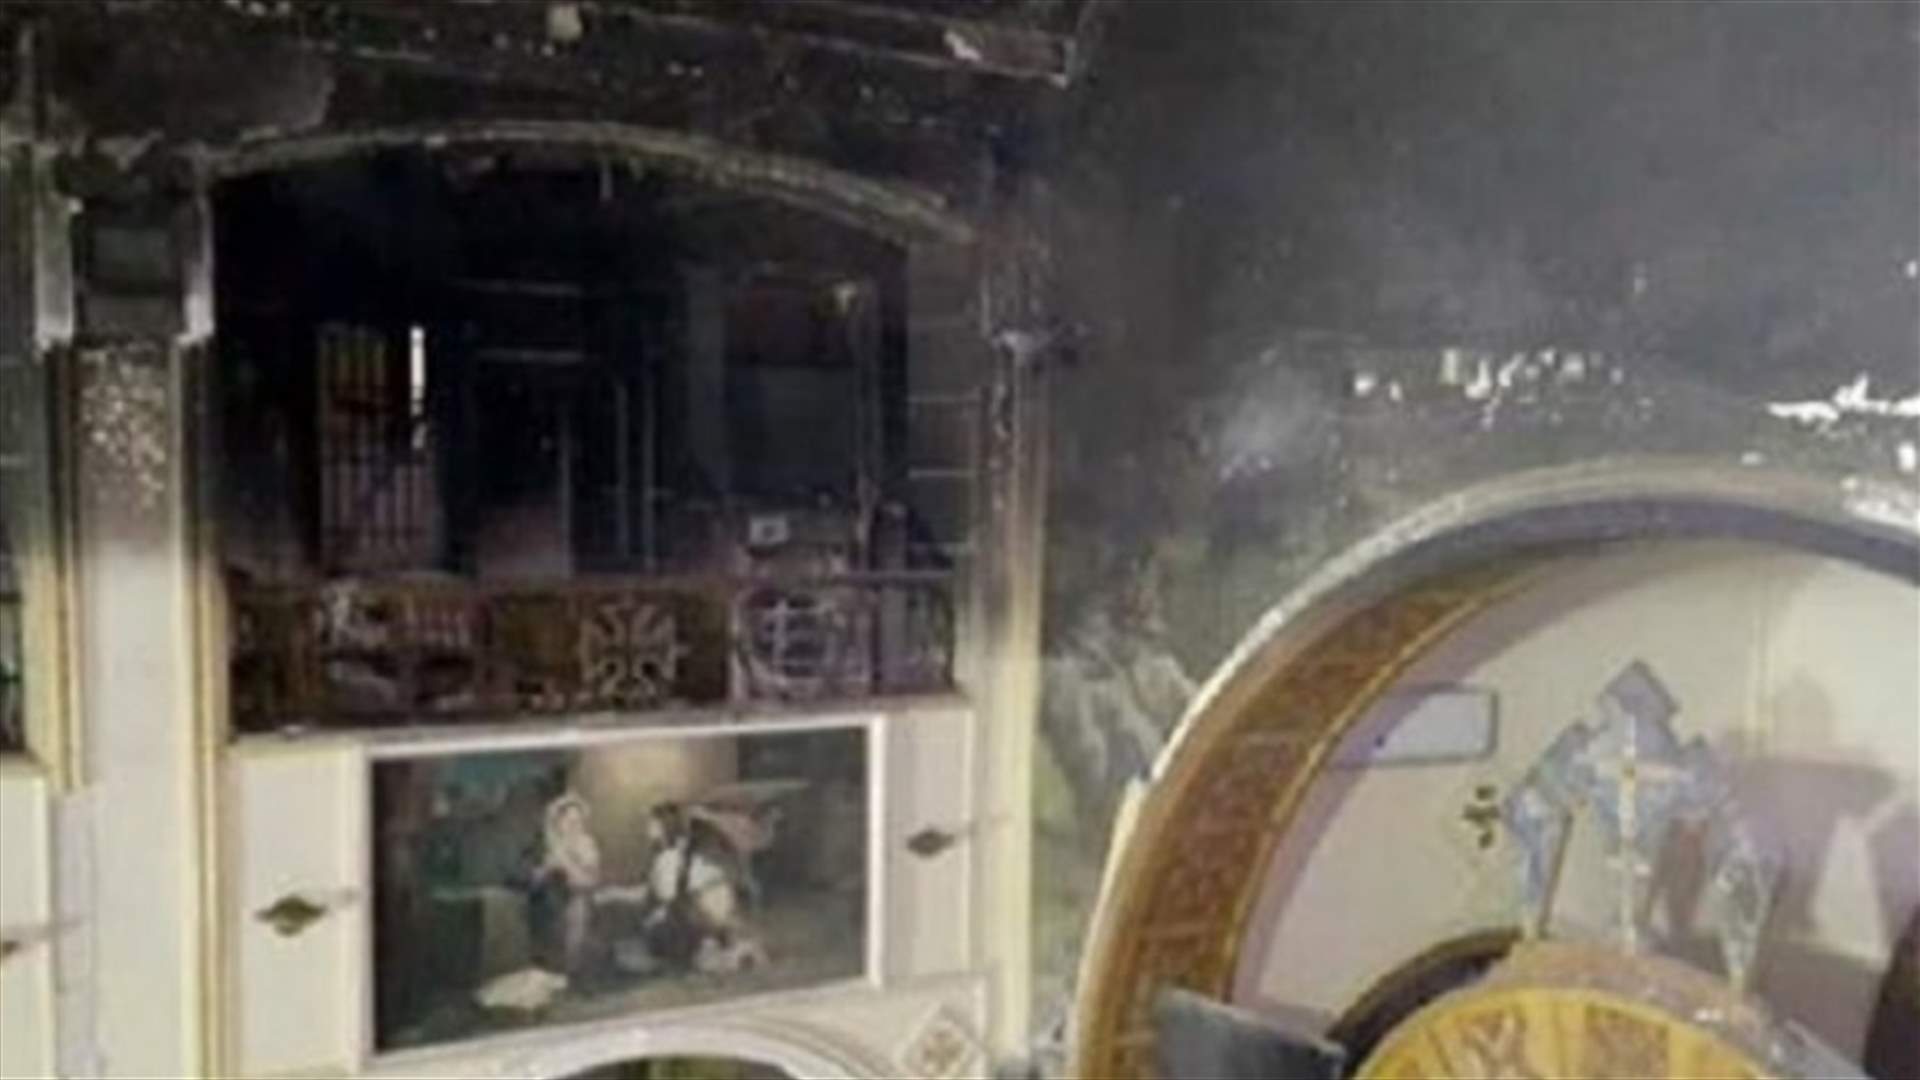 55 ضحية بينهم قتلى في حريق كبير بكنيسة غرب القاهرة